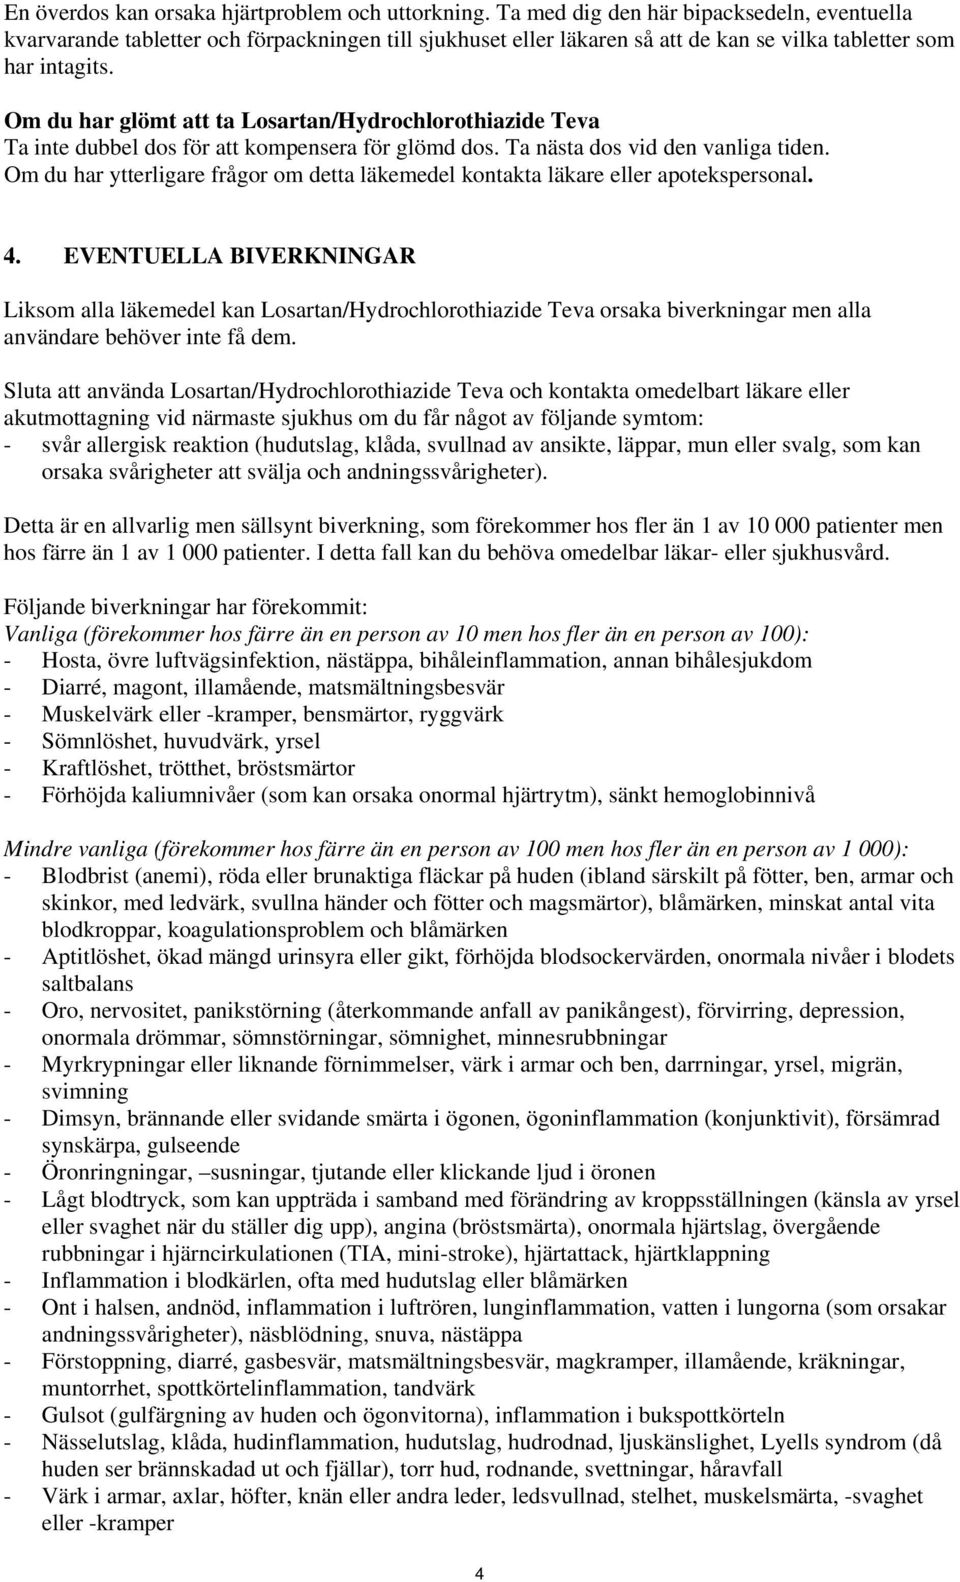 BIPACKSEDEL: INFORMATION TILL ANVÄNDAREN - PDF Free Download